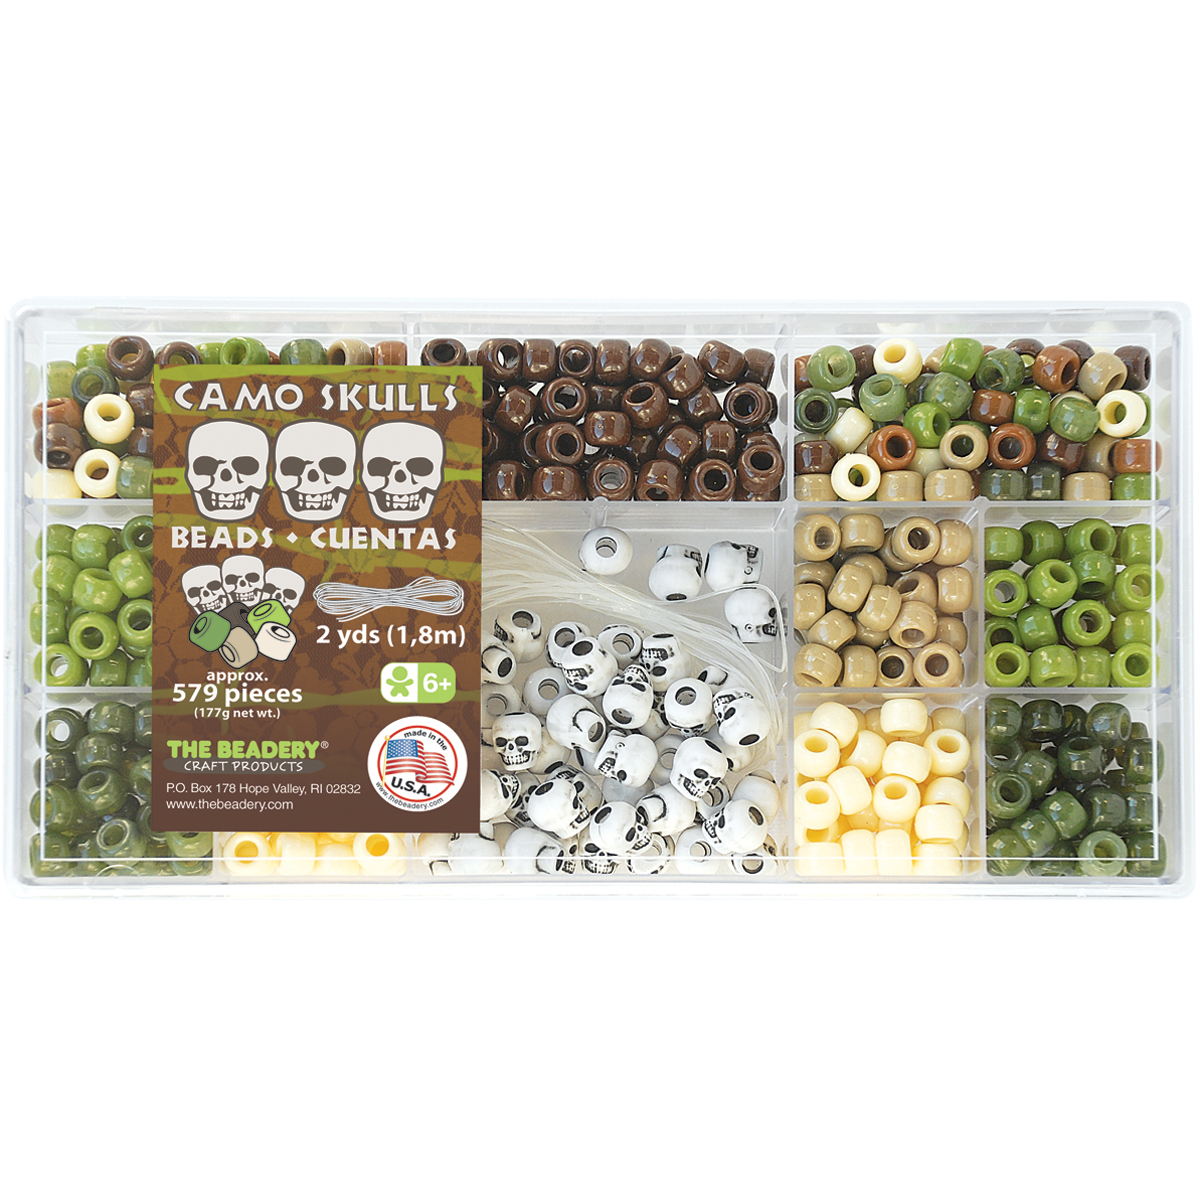 The Beadery Bead Box Kit 579 Beads Camo Skulls